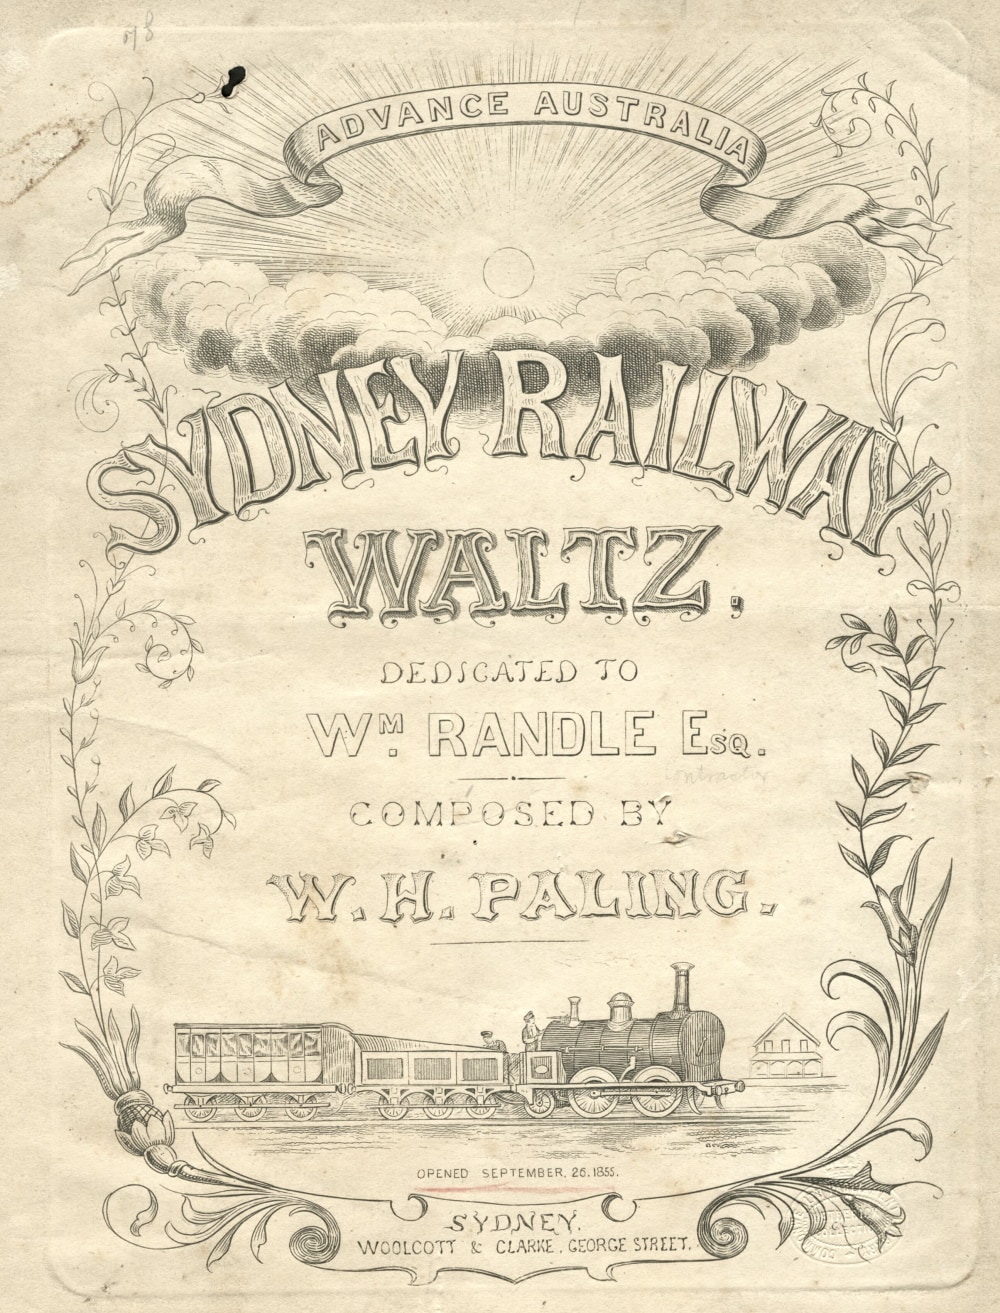 Sydney railway waltz by W. H. Paling 1855 cover